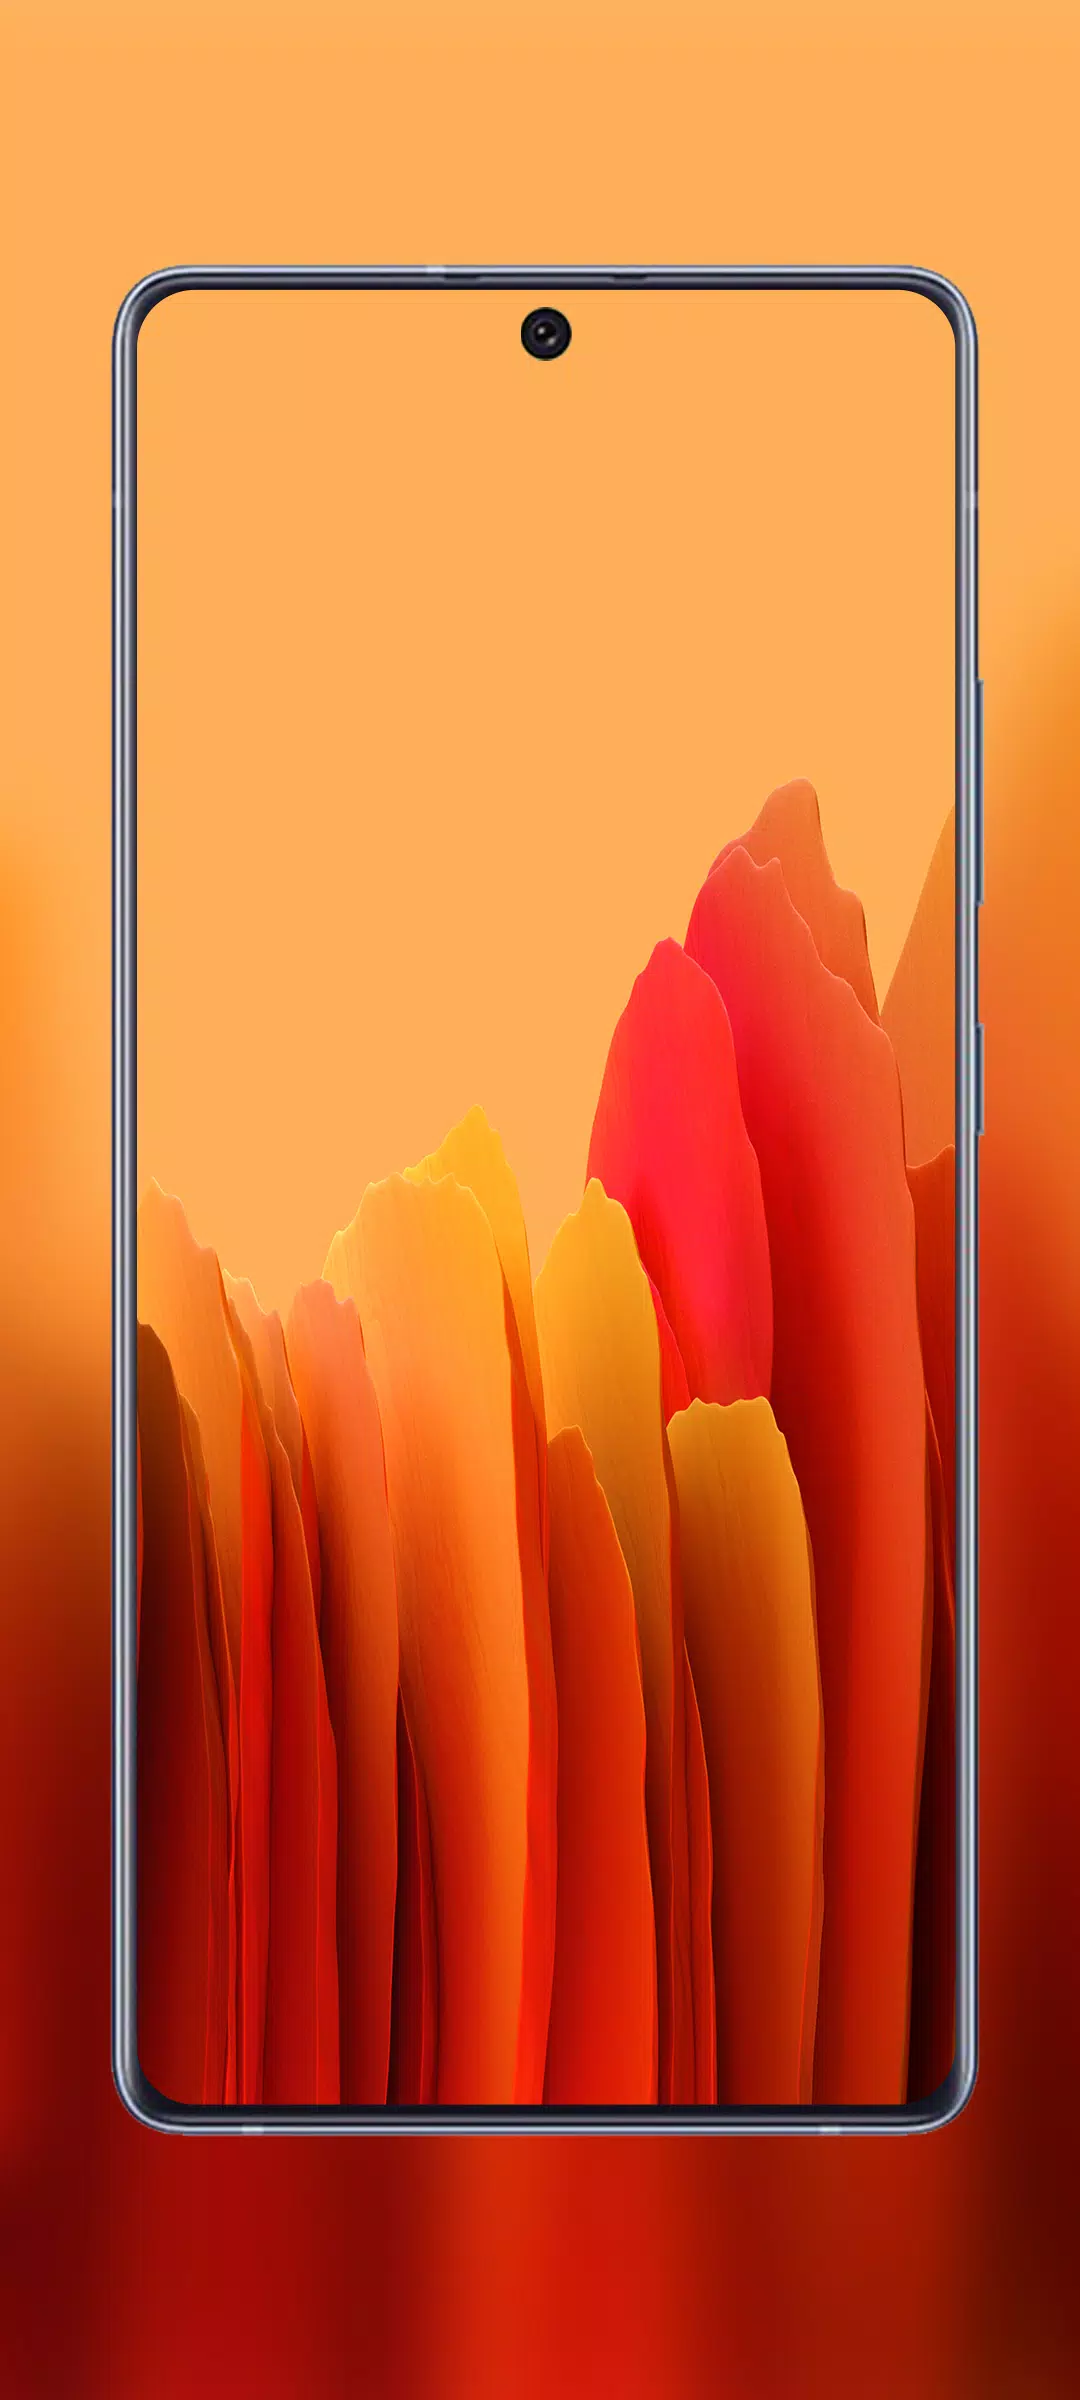 Bạn muốn tìm kiếm một ứng dụng hỗ trợ tải và cài đặt hình nền chất lượng cho điện thoại Samsung Galaxy A52? Hãy thử tải ngay Galaxy A52 Wallpaper APK để có trải nghiệm đơn giản, nhanh chóng và tiện lợi nhất.